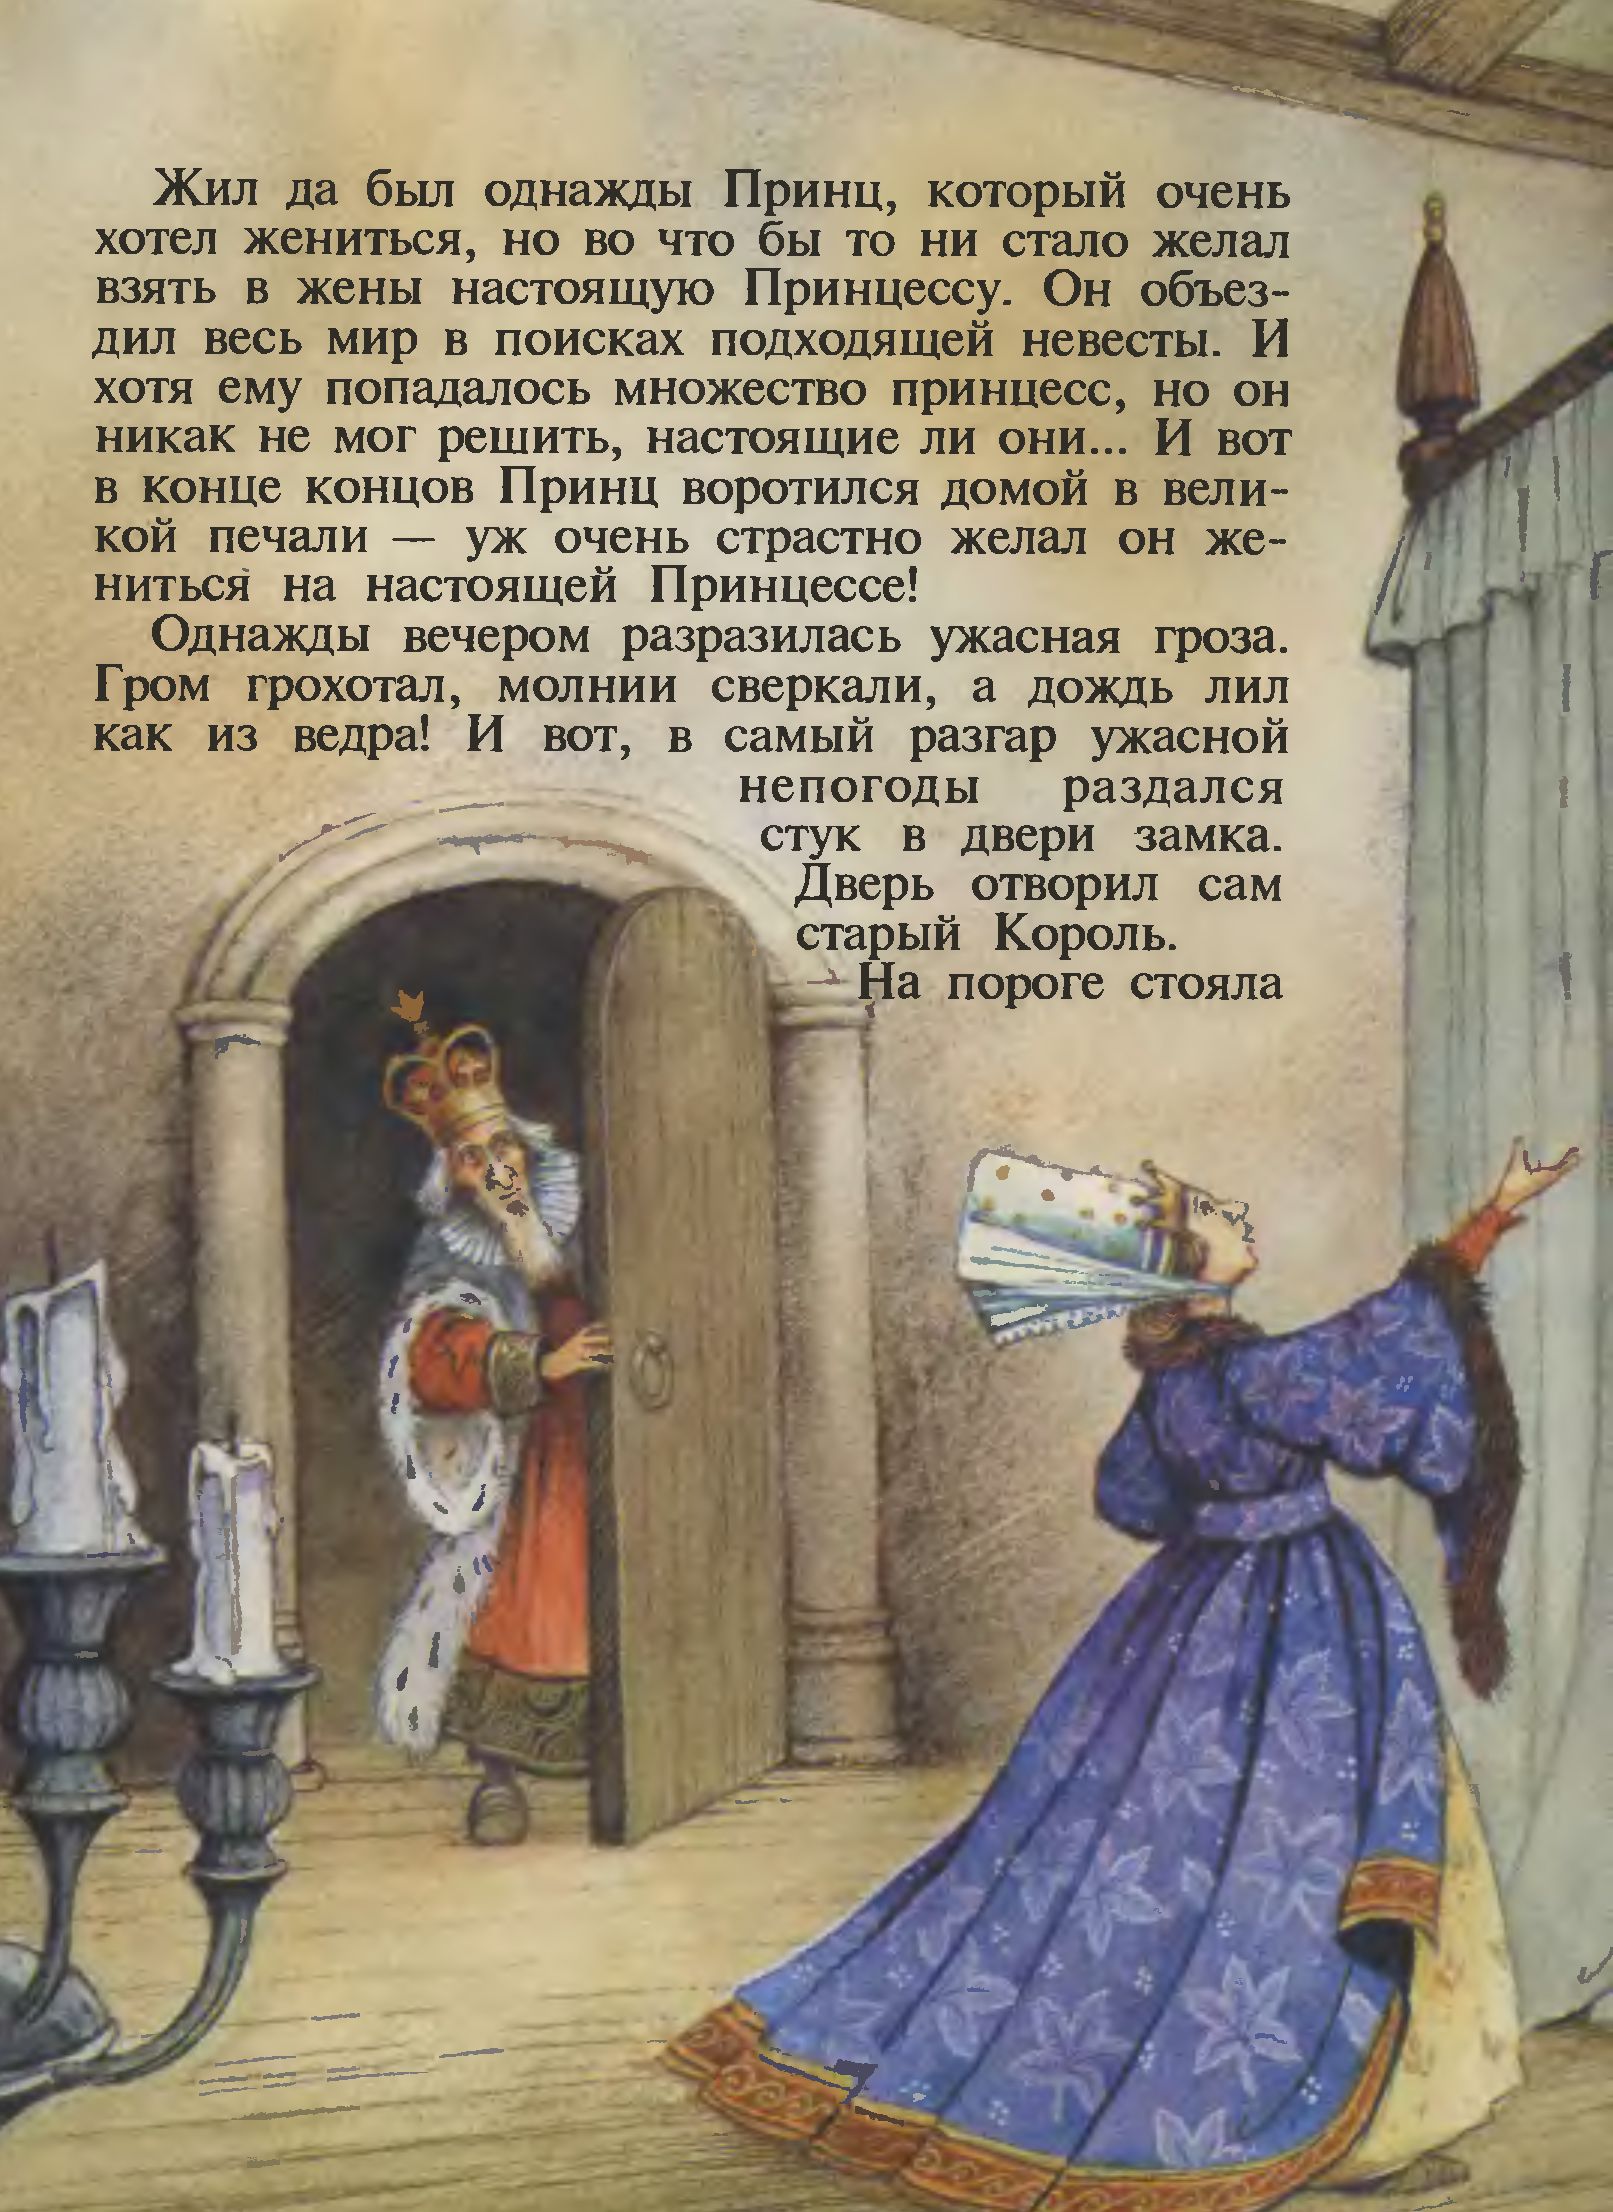 Иллюстрации Джона Пейшенса к сказке «Принцесса на горошине»